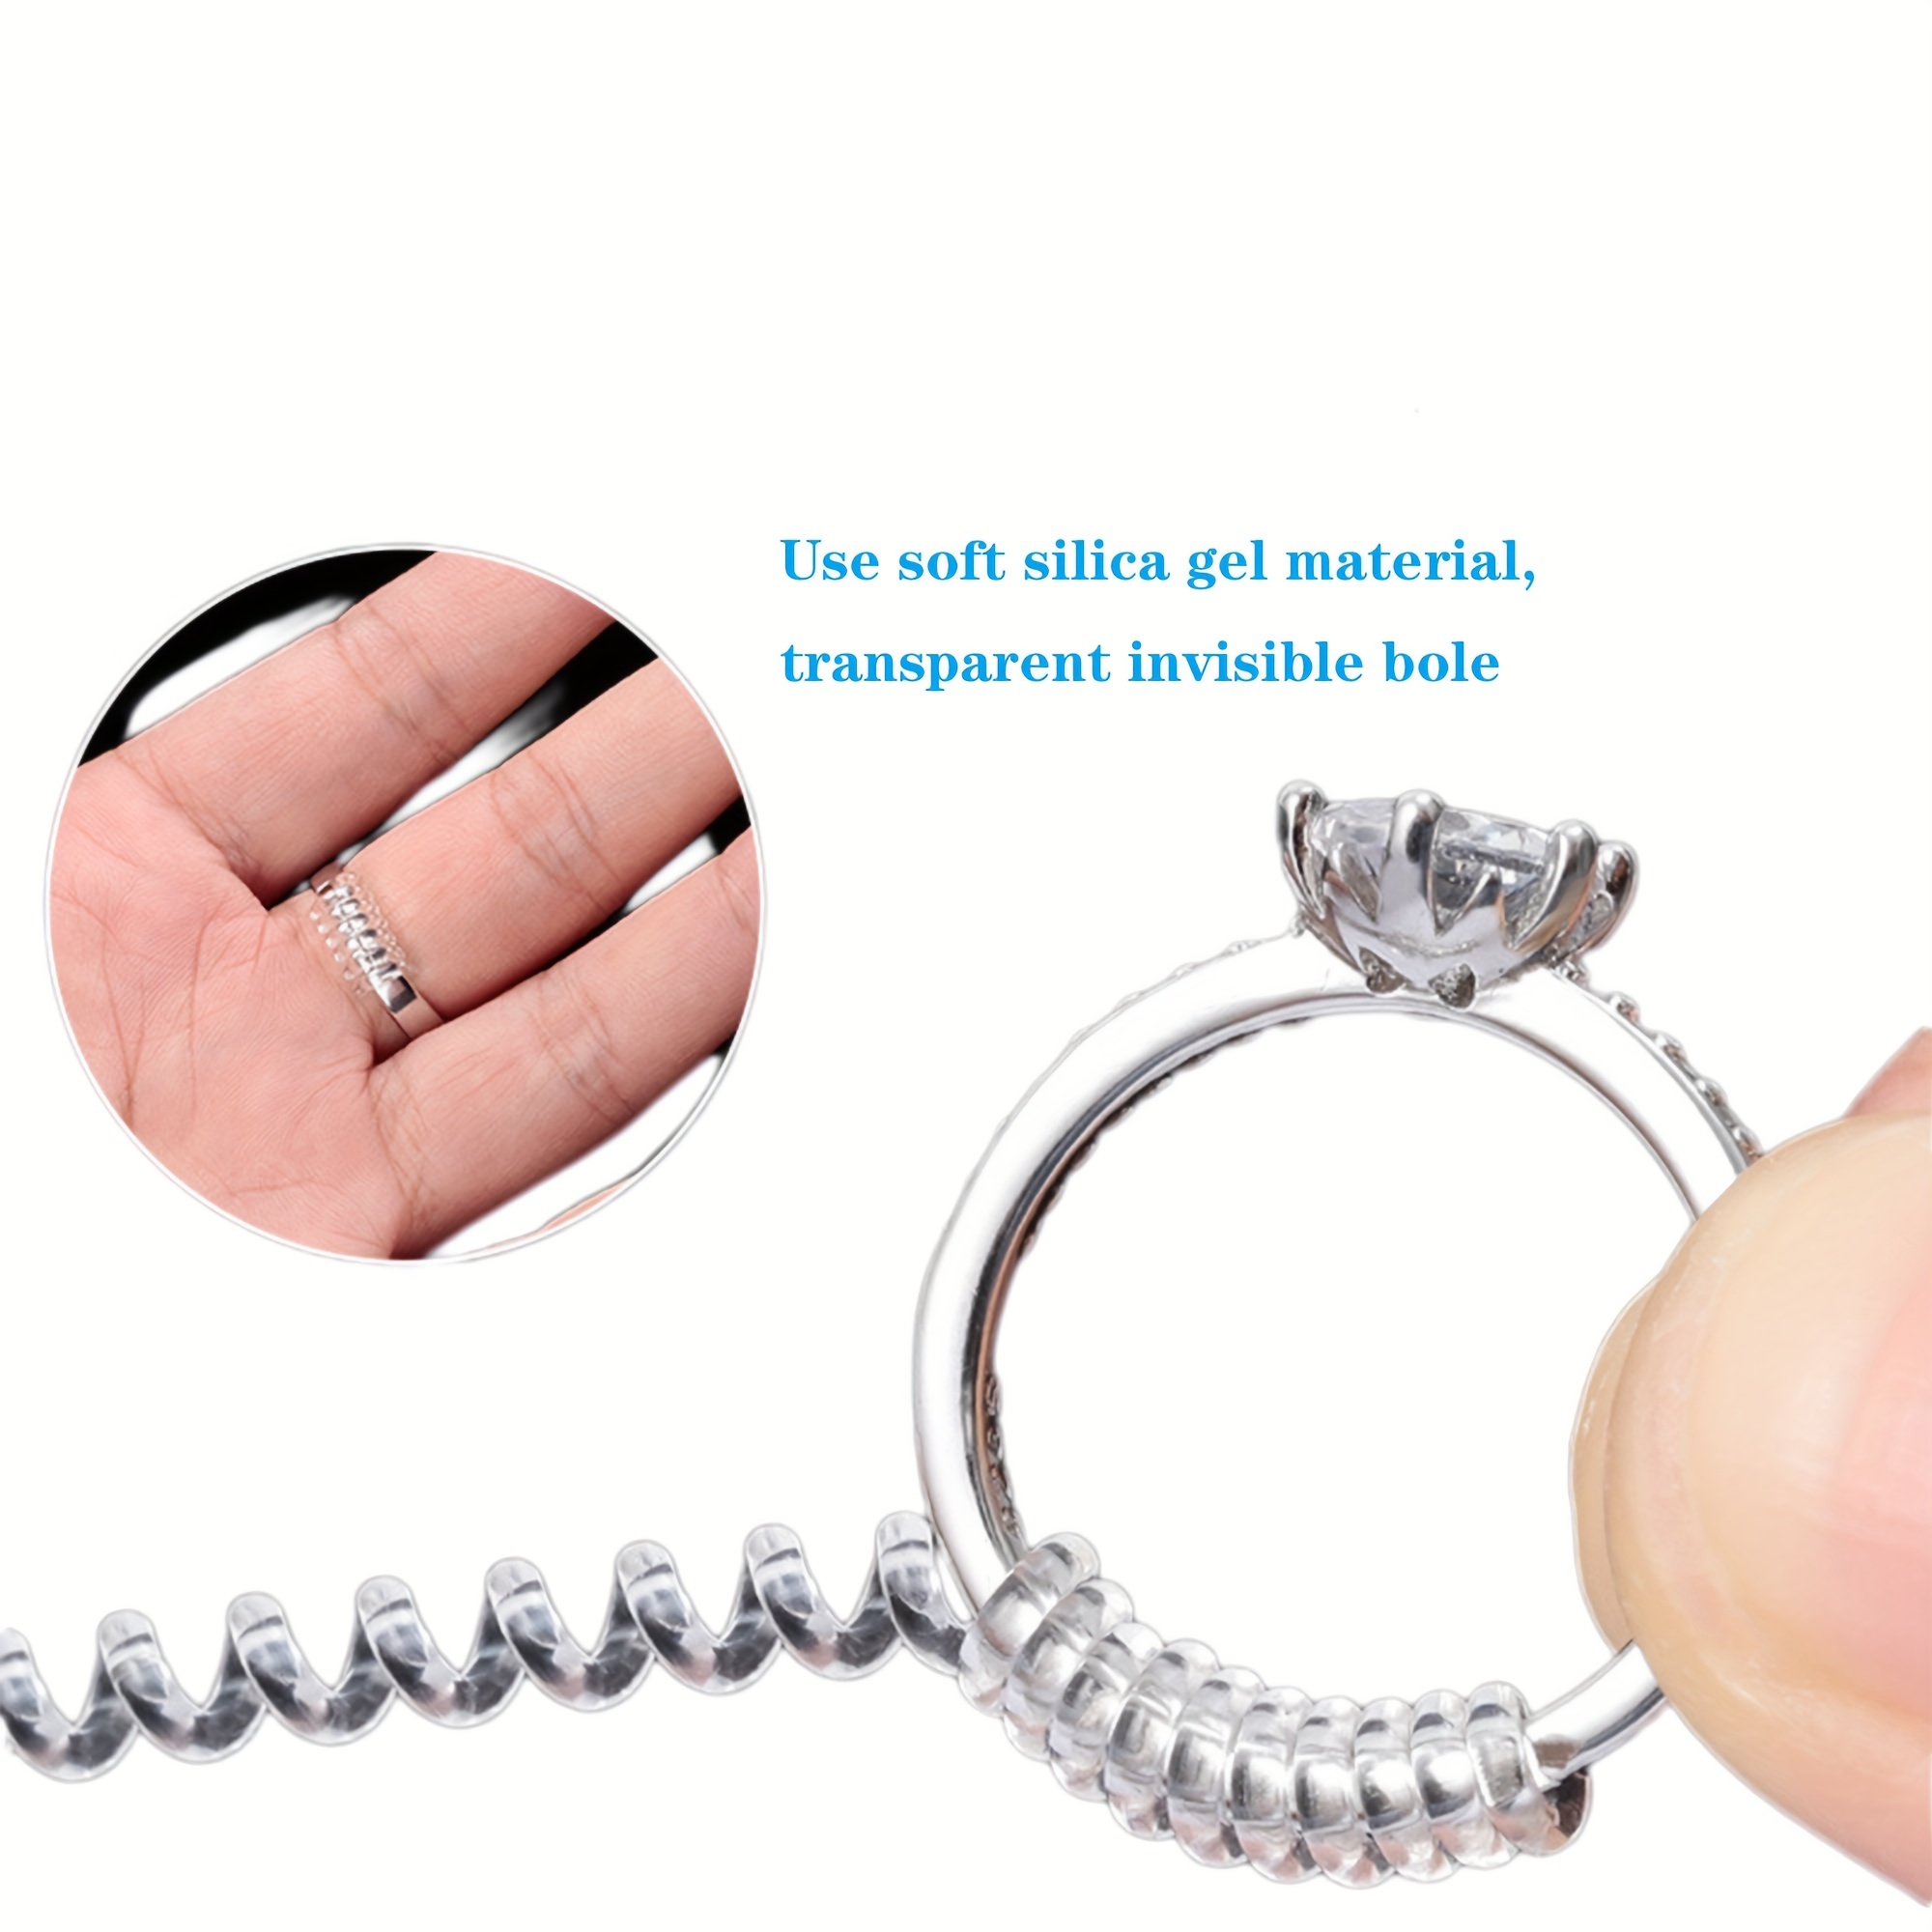 1 Stück Ringgrößenversteller Für Lose Ringe – 12er-Pack, 2 Größen Für  Verschiedene Bandbreiten, Silikon-Ringgrößenversteller – Unsichtbarer  Ringschutz